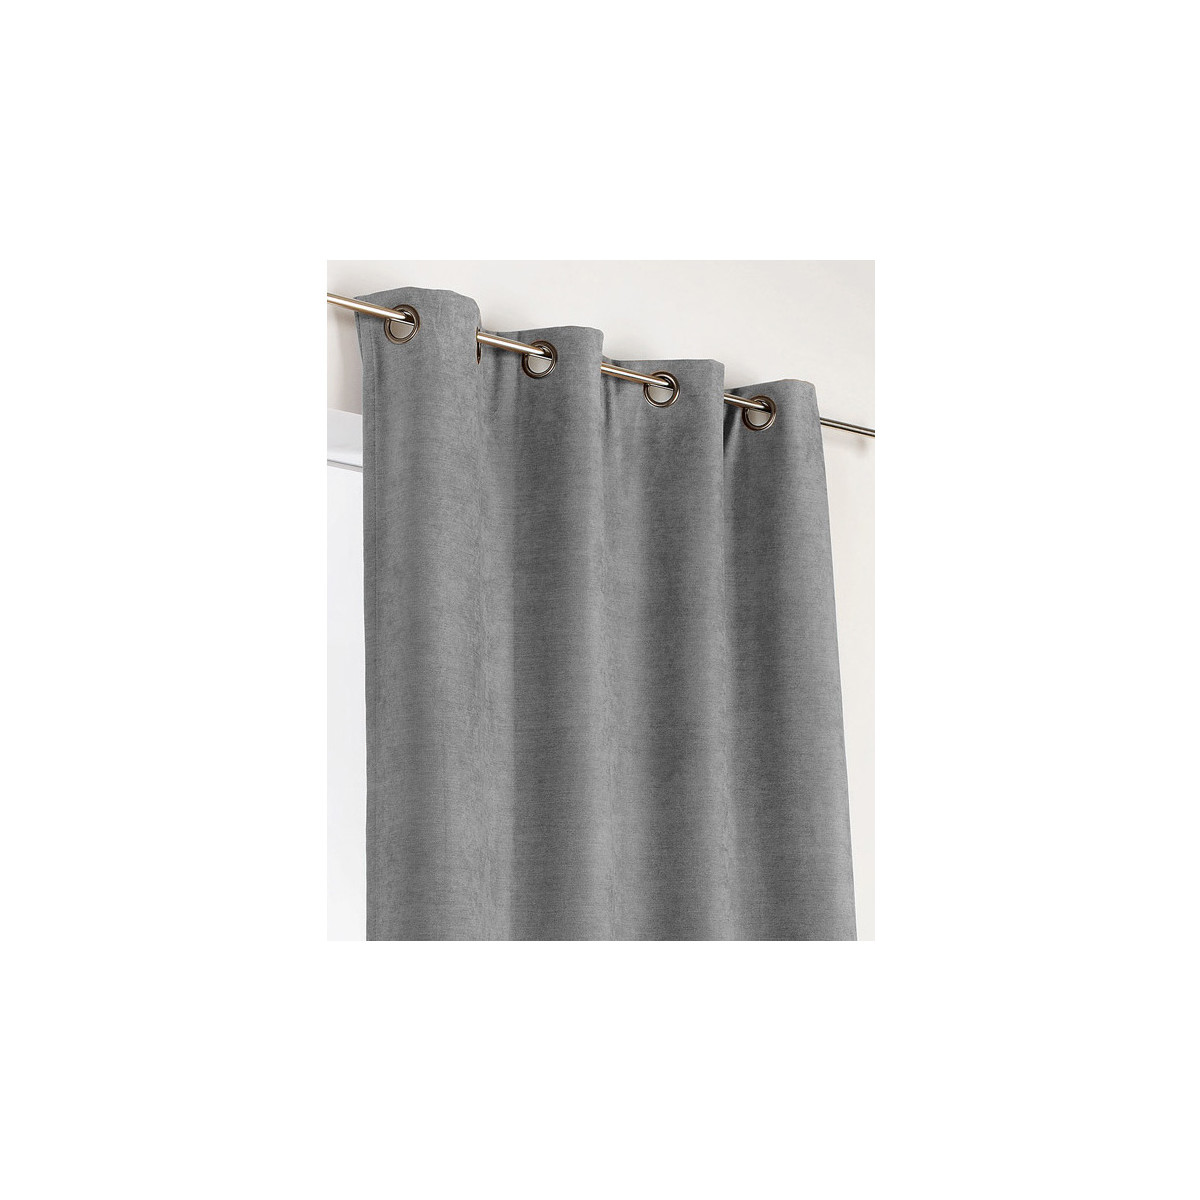 Home Curtains & blinds Linder ALASKA Grey